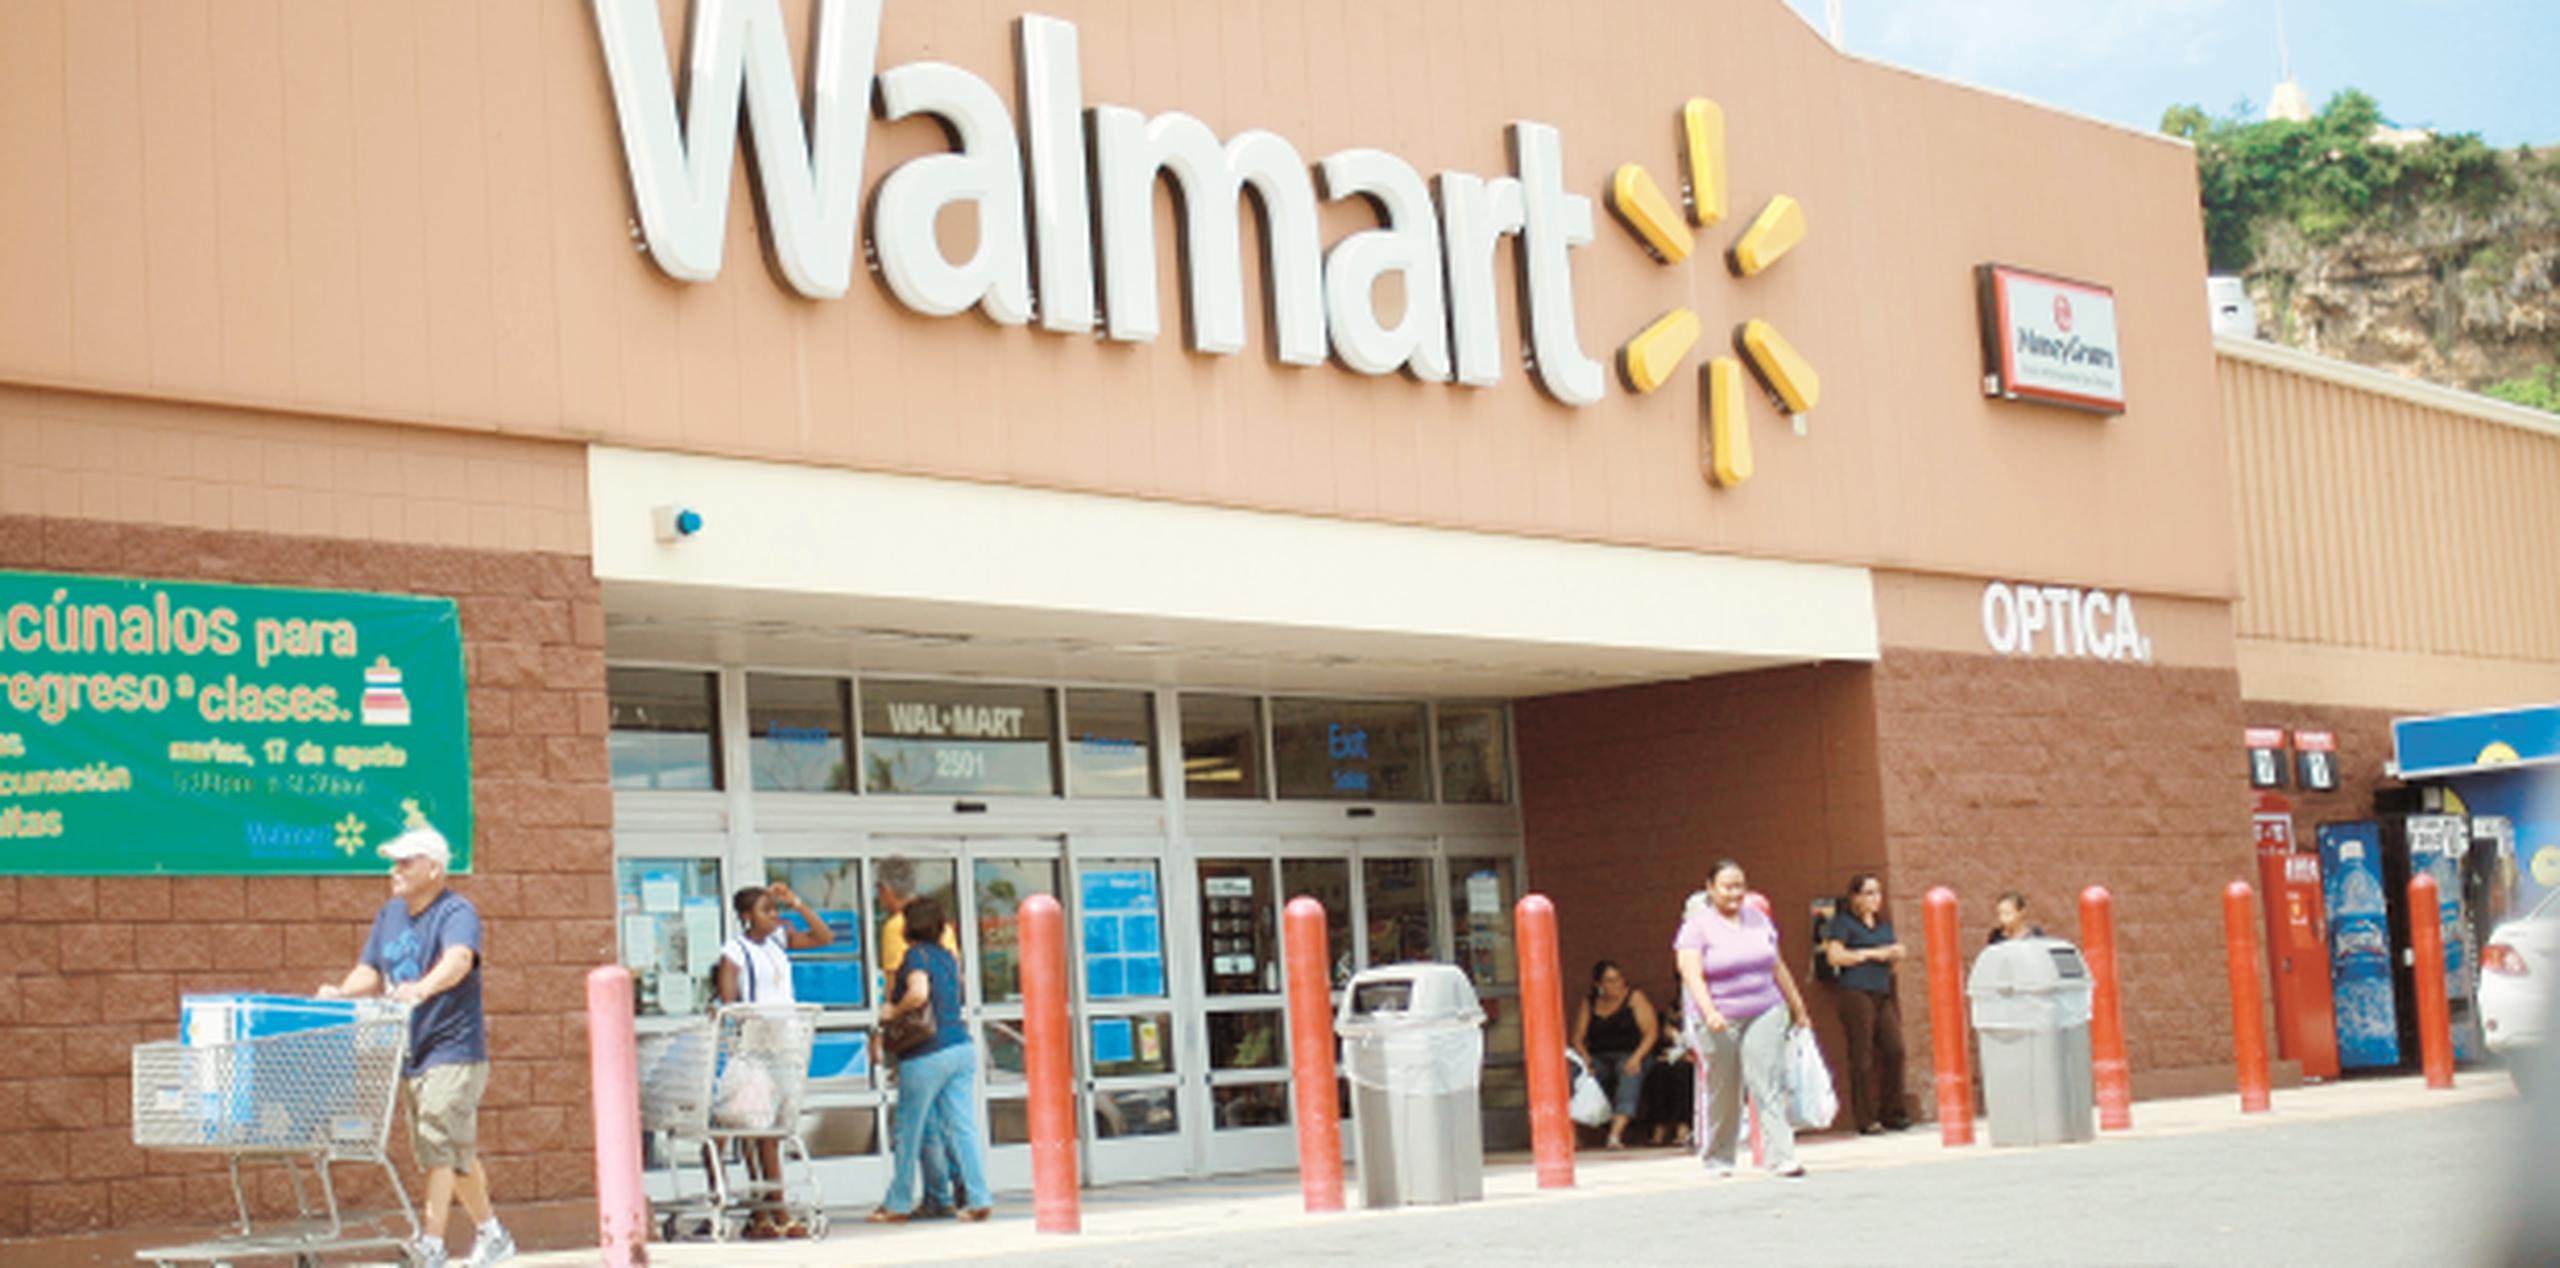 Walmart cuenta con 48 tiendas entre todos sus formatos. (Archivo)